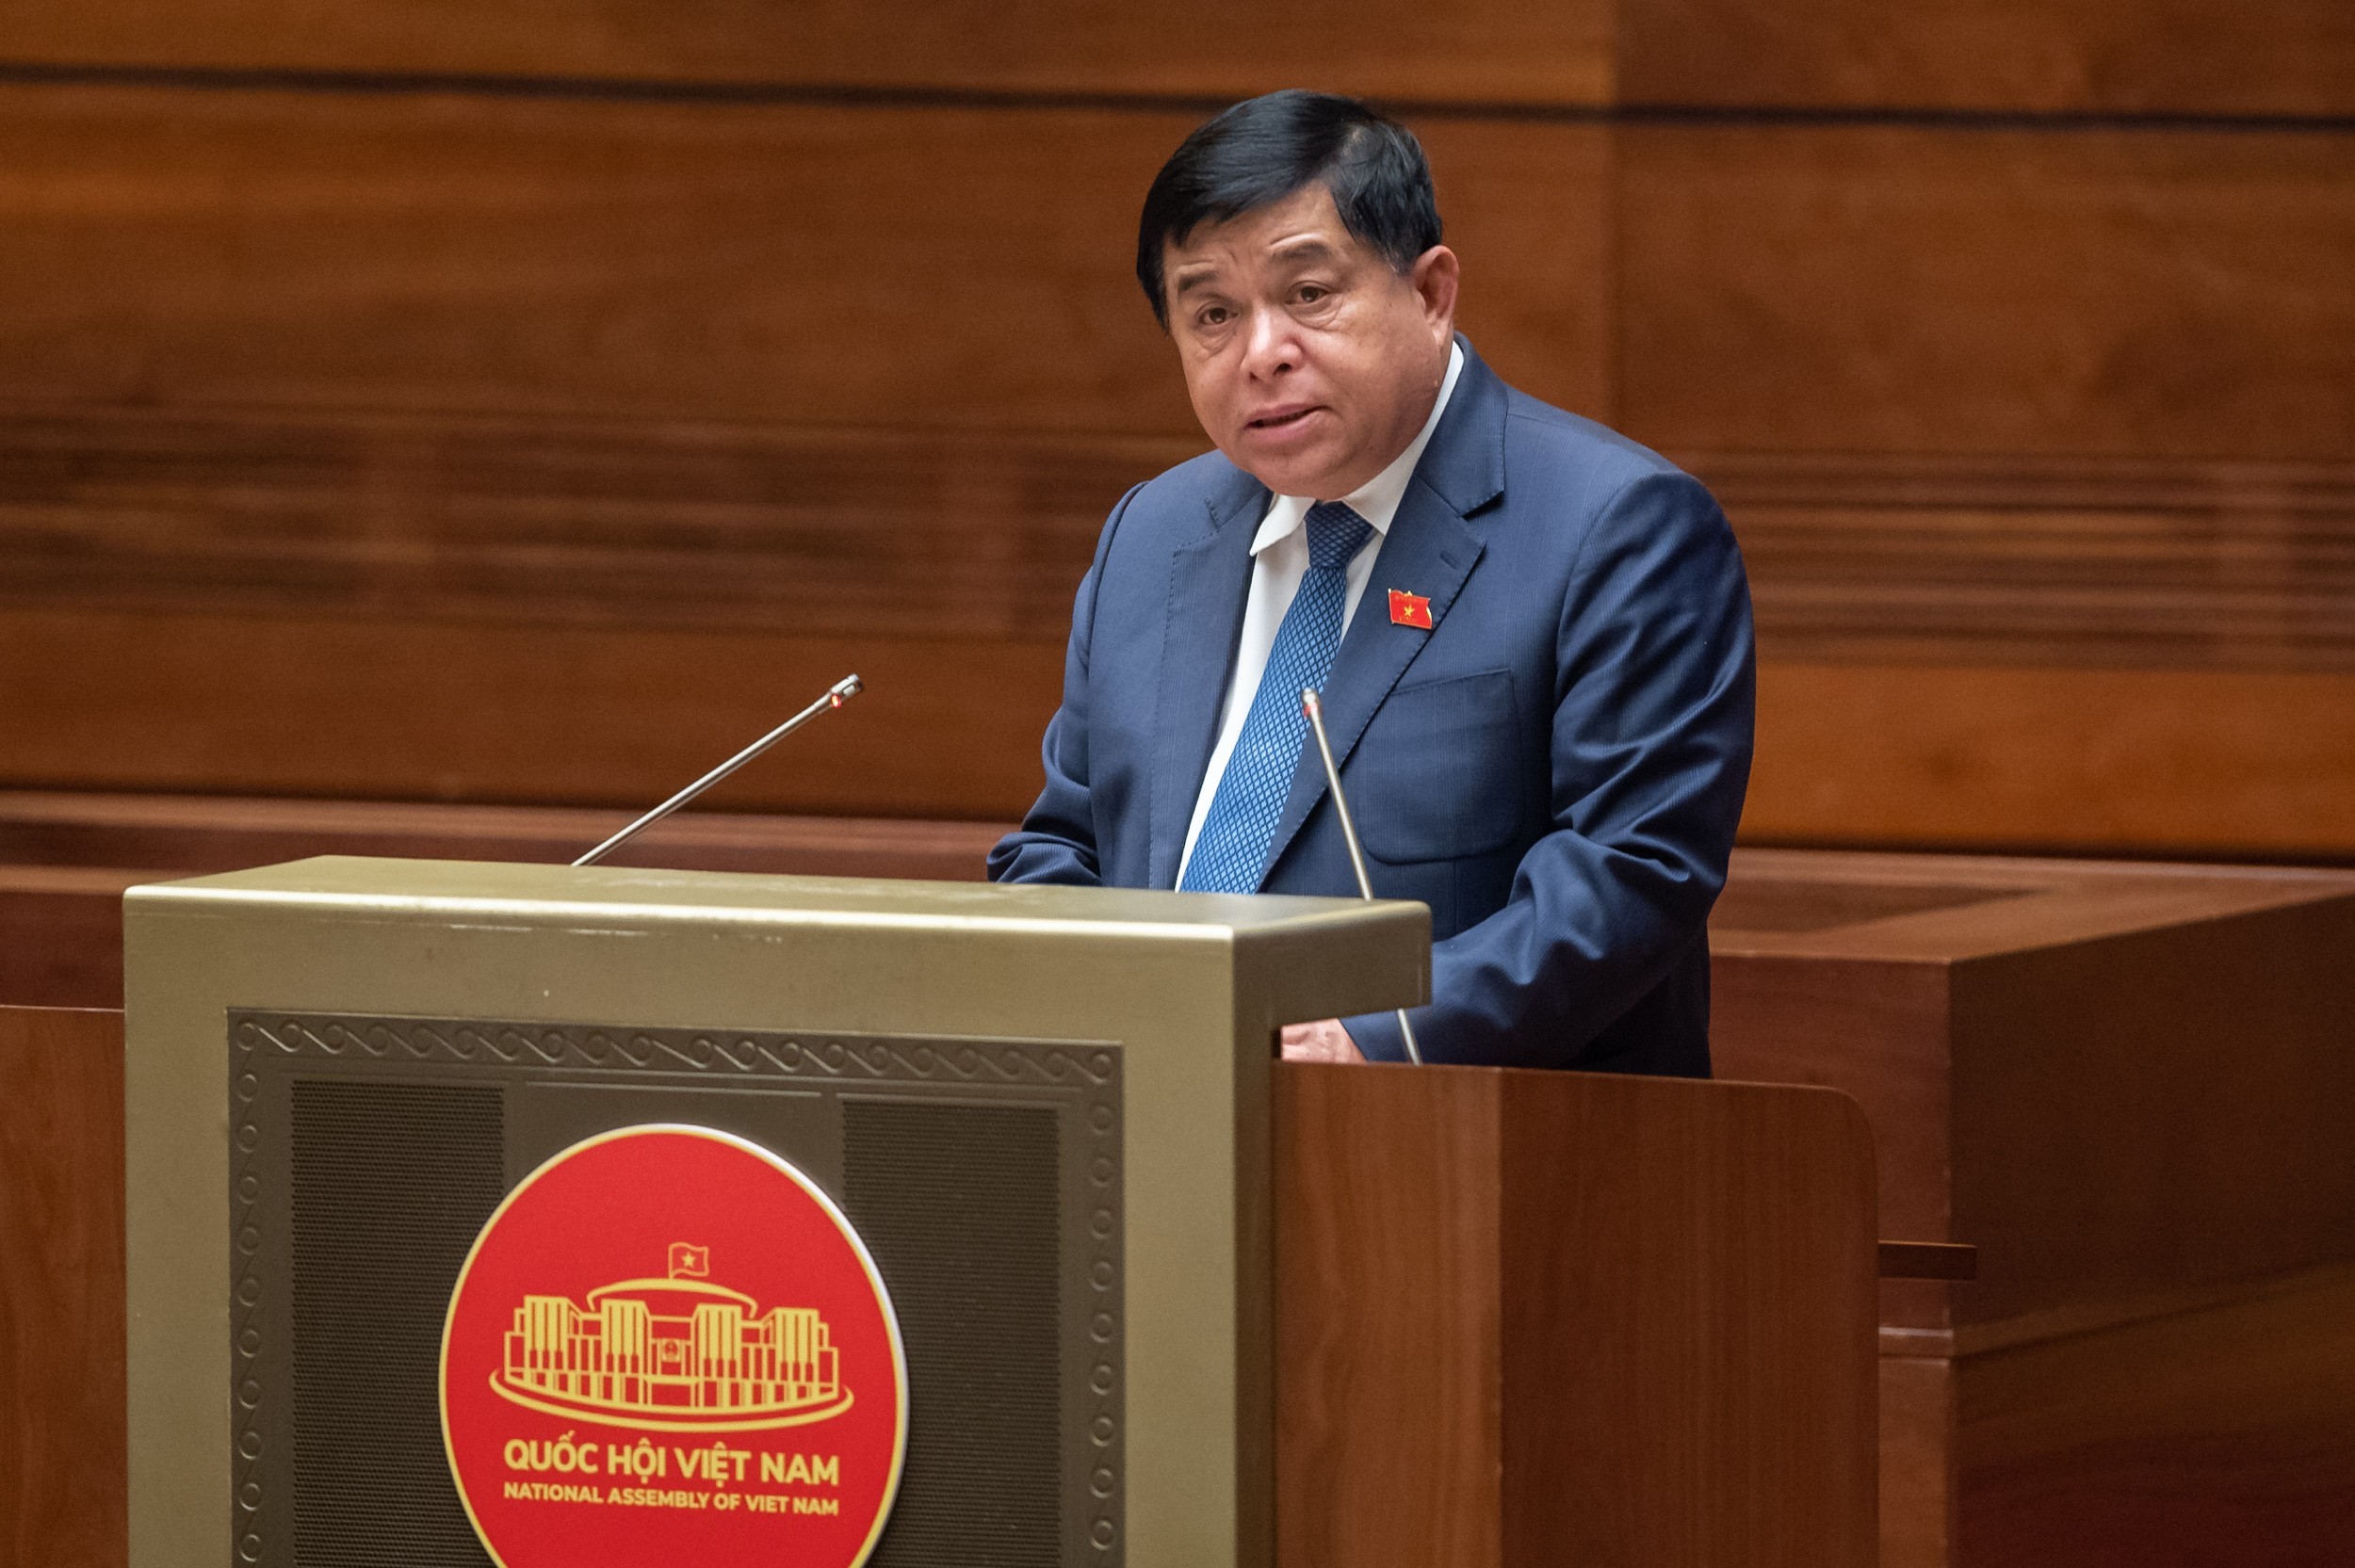 Bộ trưởng Bộ Kế hoạch và Đầu tư Nguyễn Chí Dũng: Việc phân bổ vốn vẫn còn chậm so với yêu cầu của Quốc hội